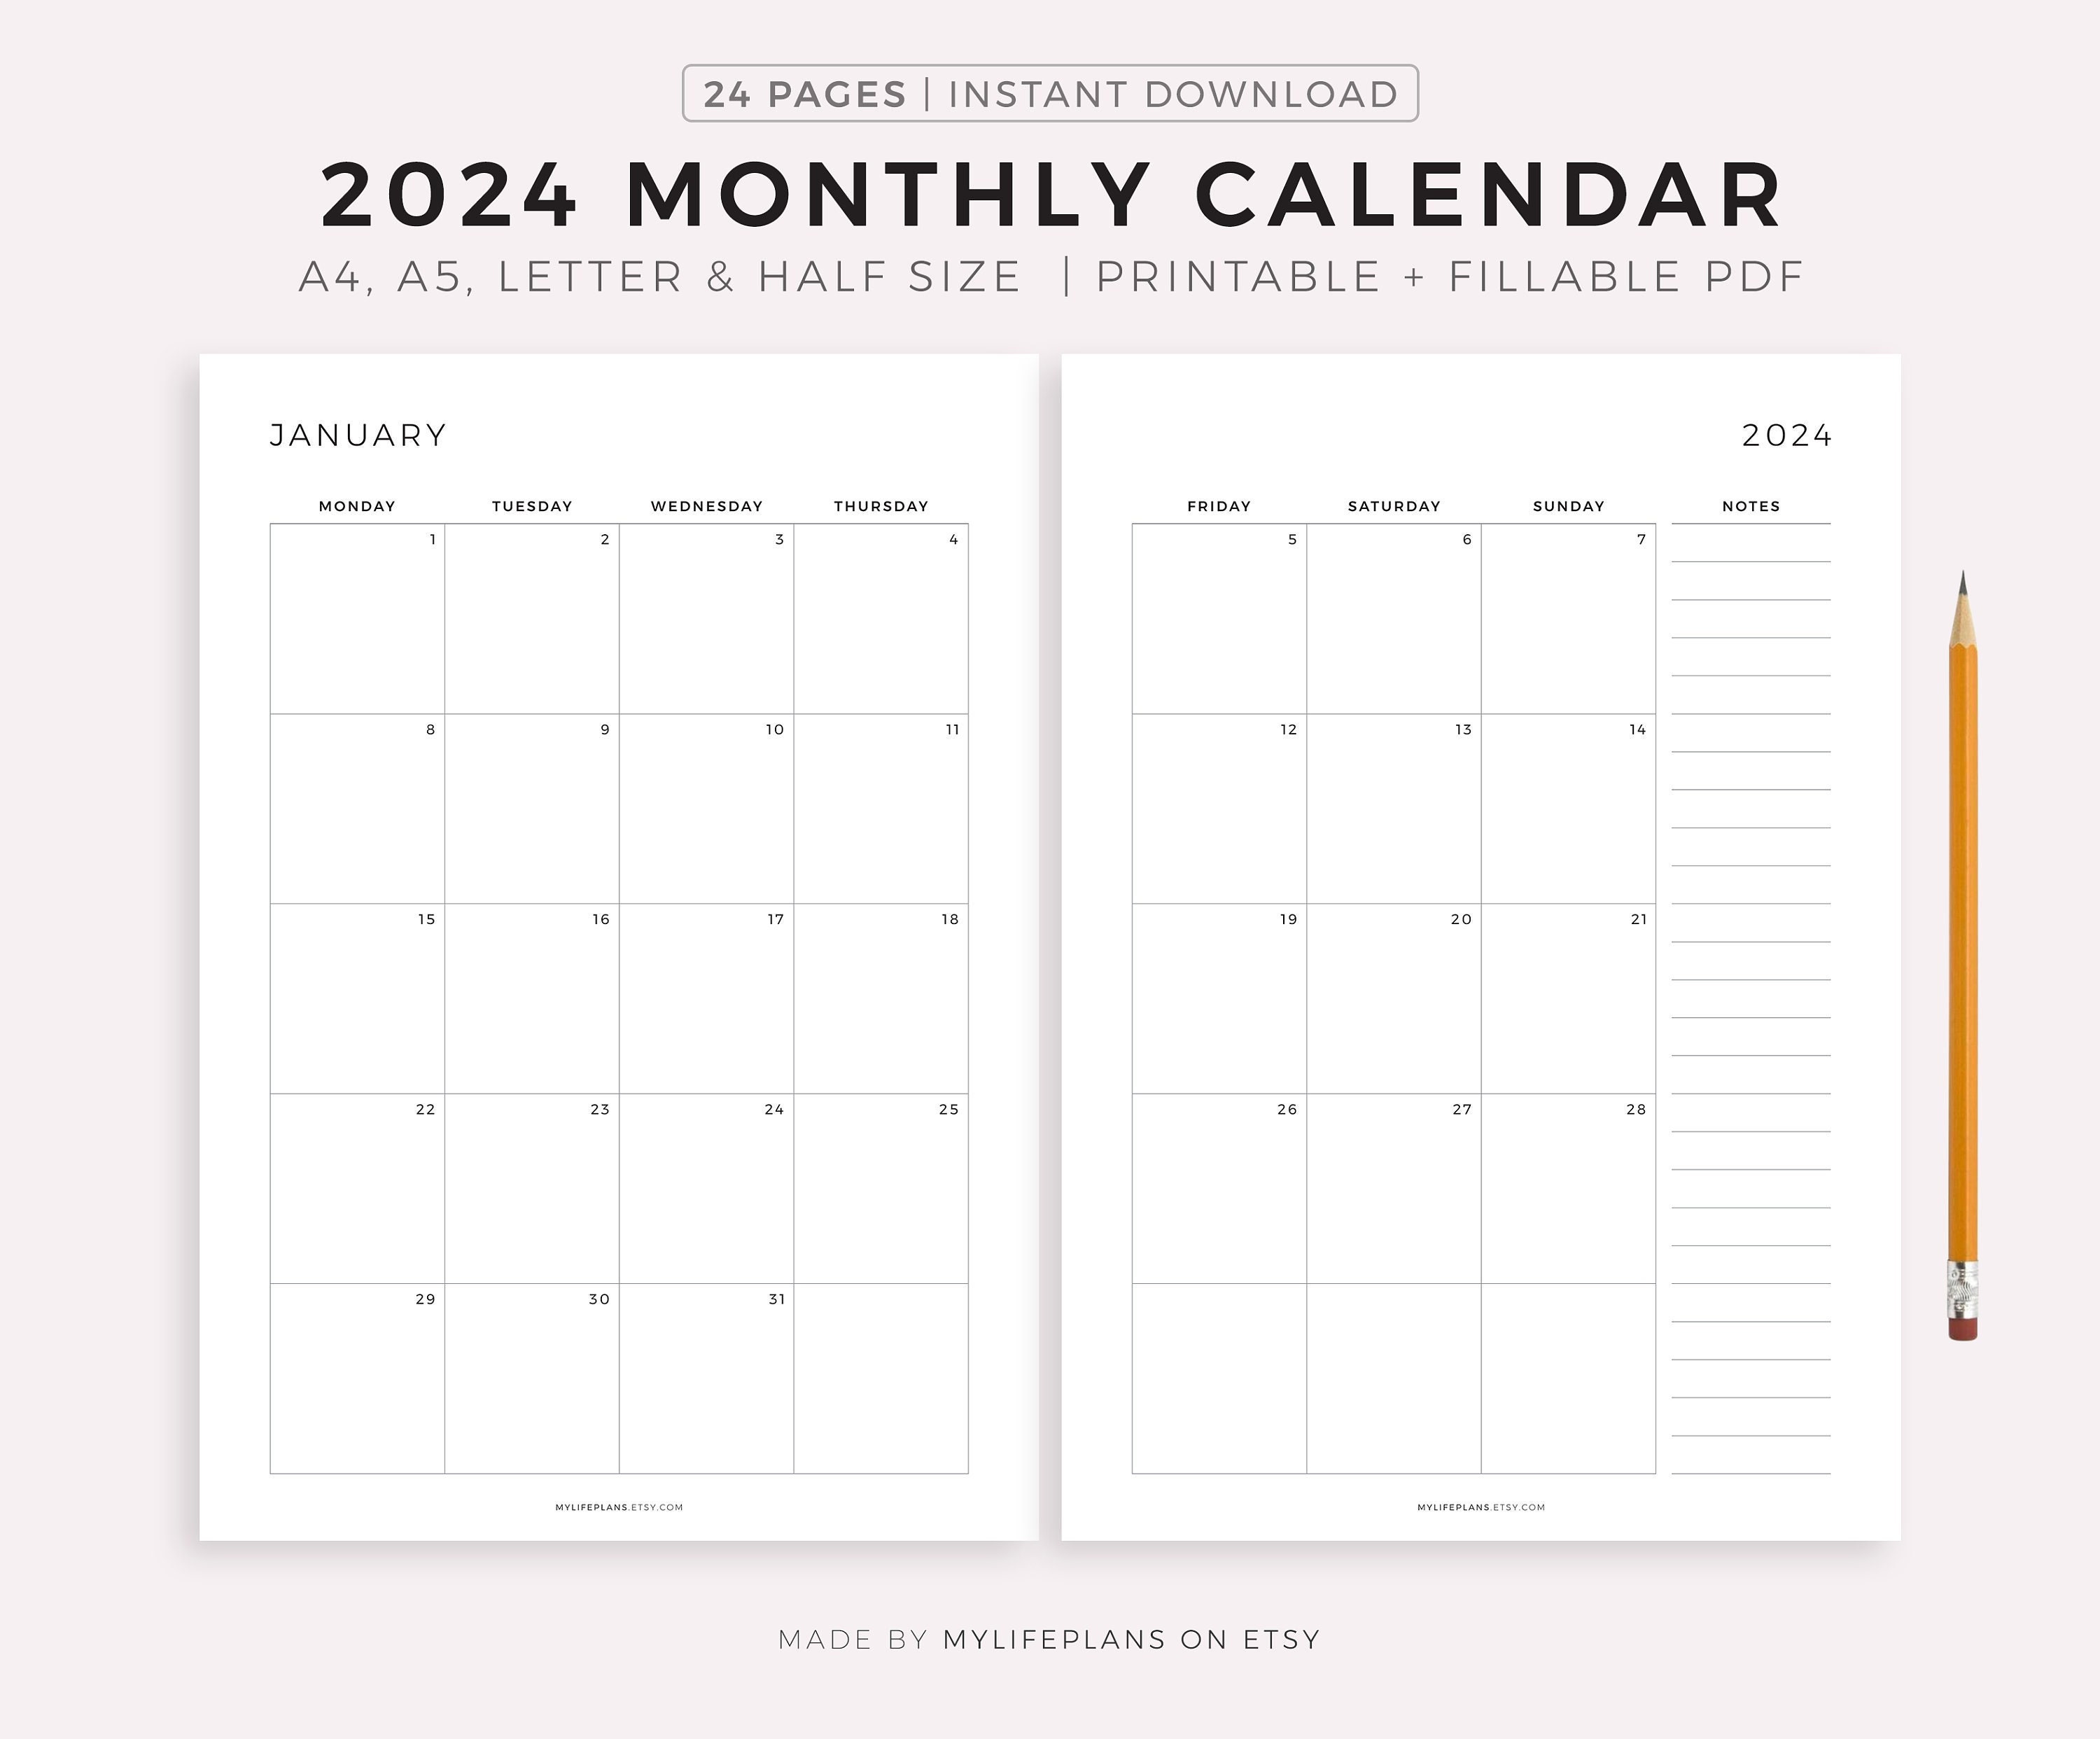 Calendario 2024 mensile in PDF stampabile: scegli e scarica ora!